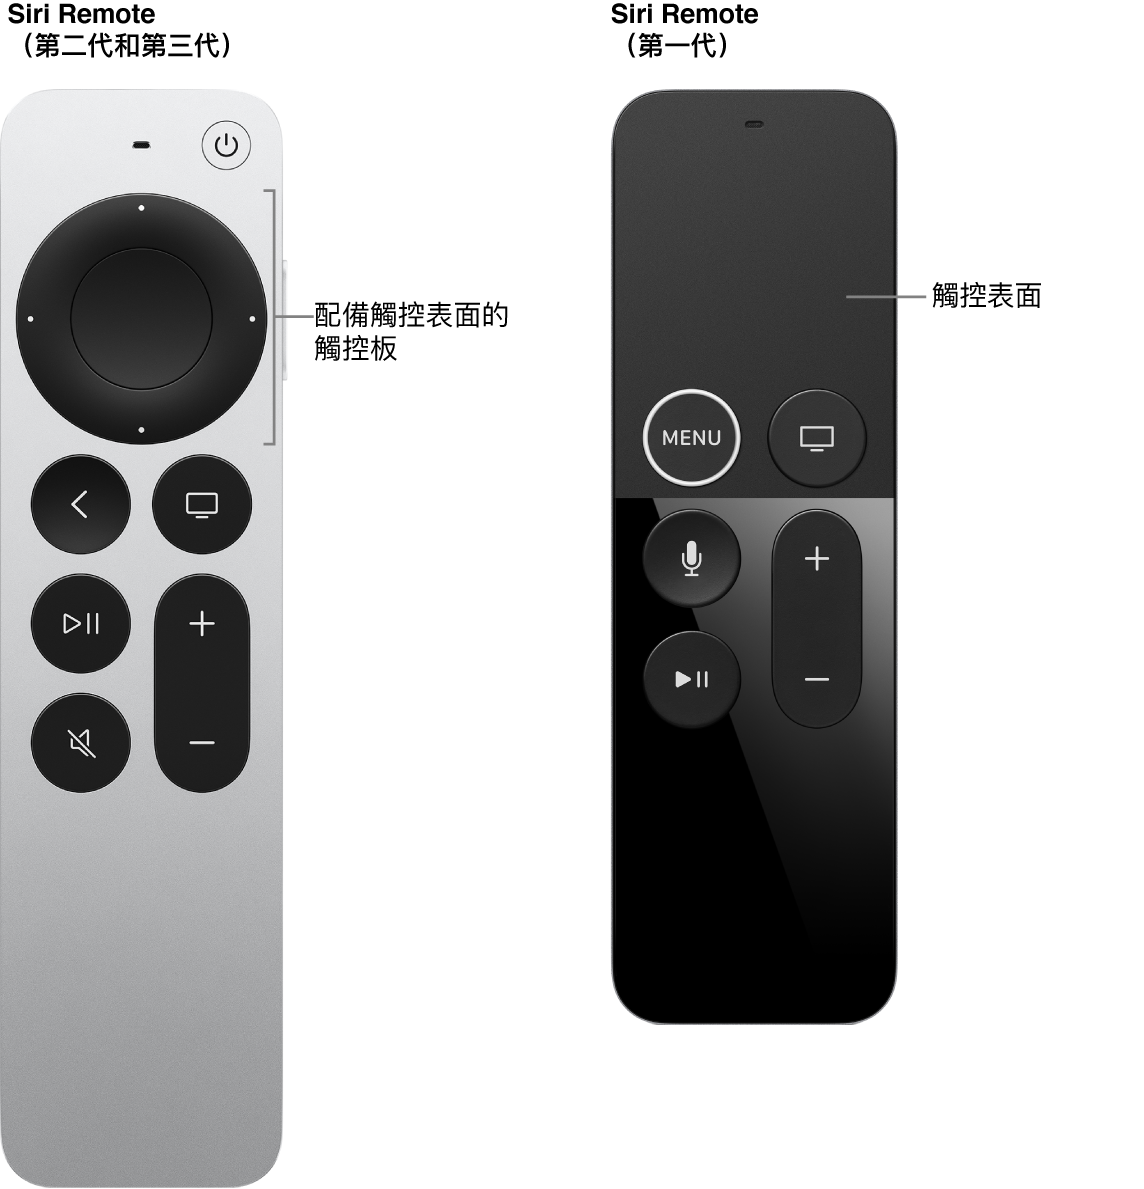 配備觸控板的 Siri Remote（第二代和第三代）以及配備觸控表面的 Siri Remote（第一代）